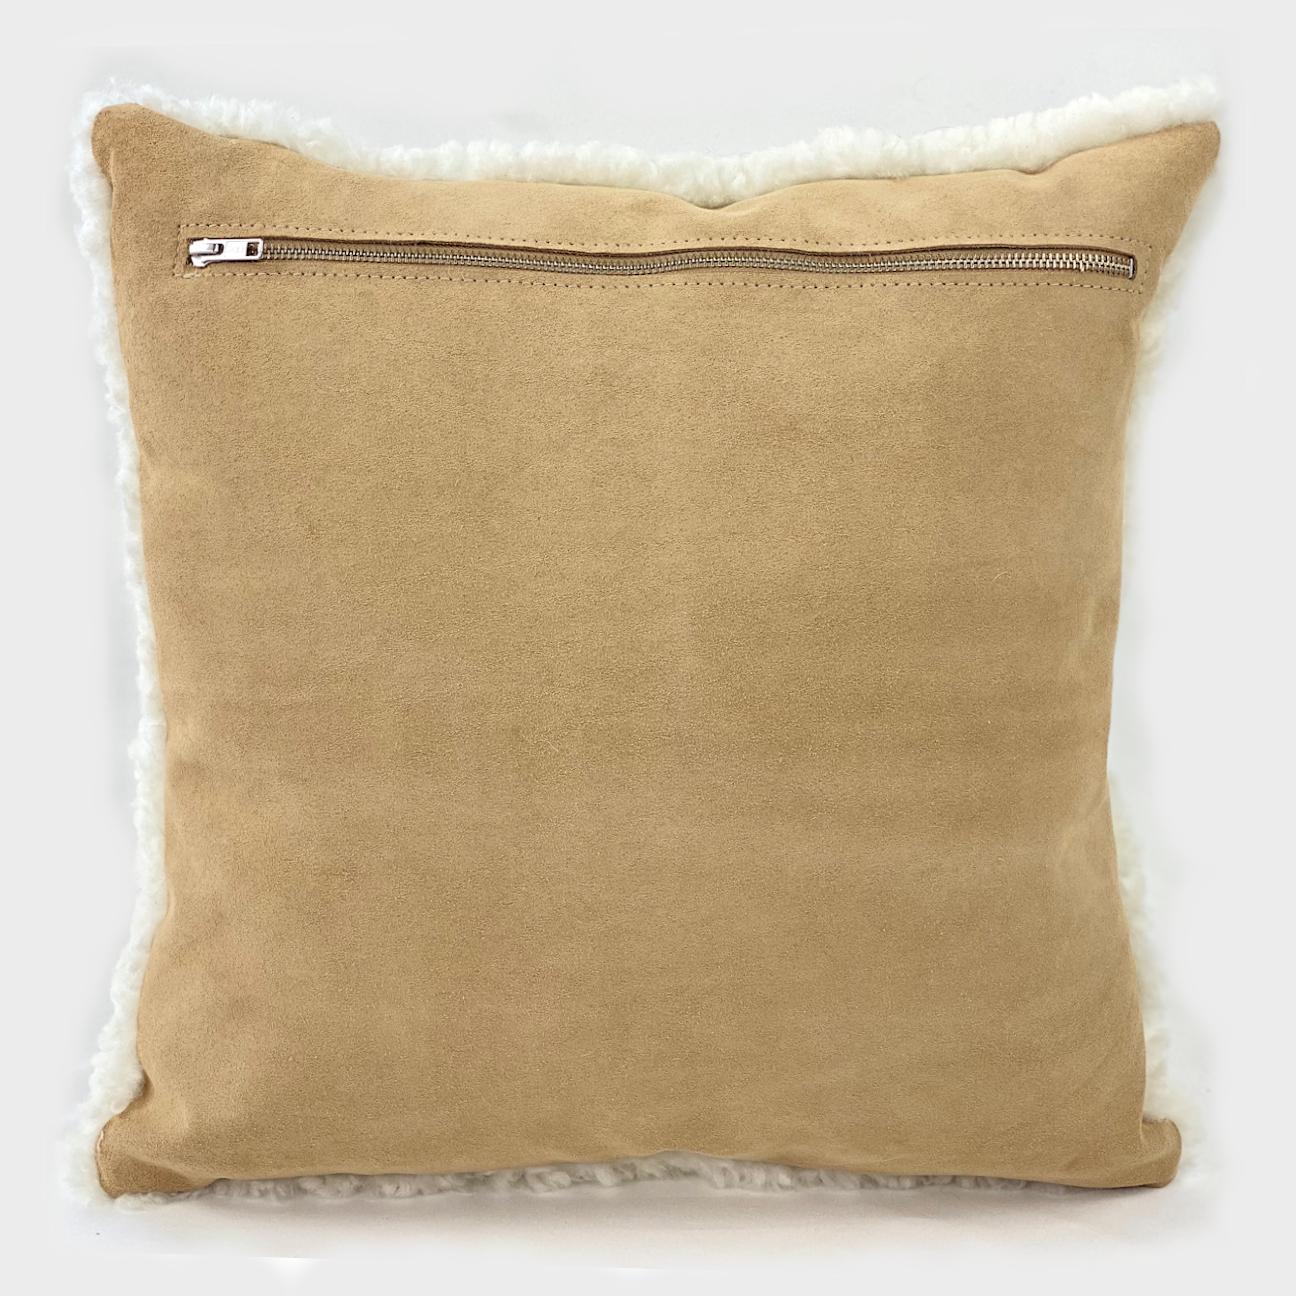 Scandinavian Modern Shearling Sheepskin Pillow, White Square 16x16